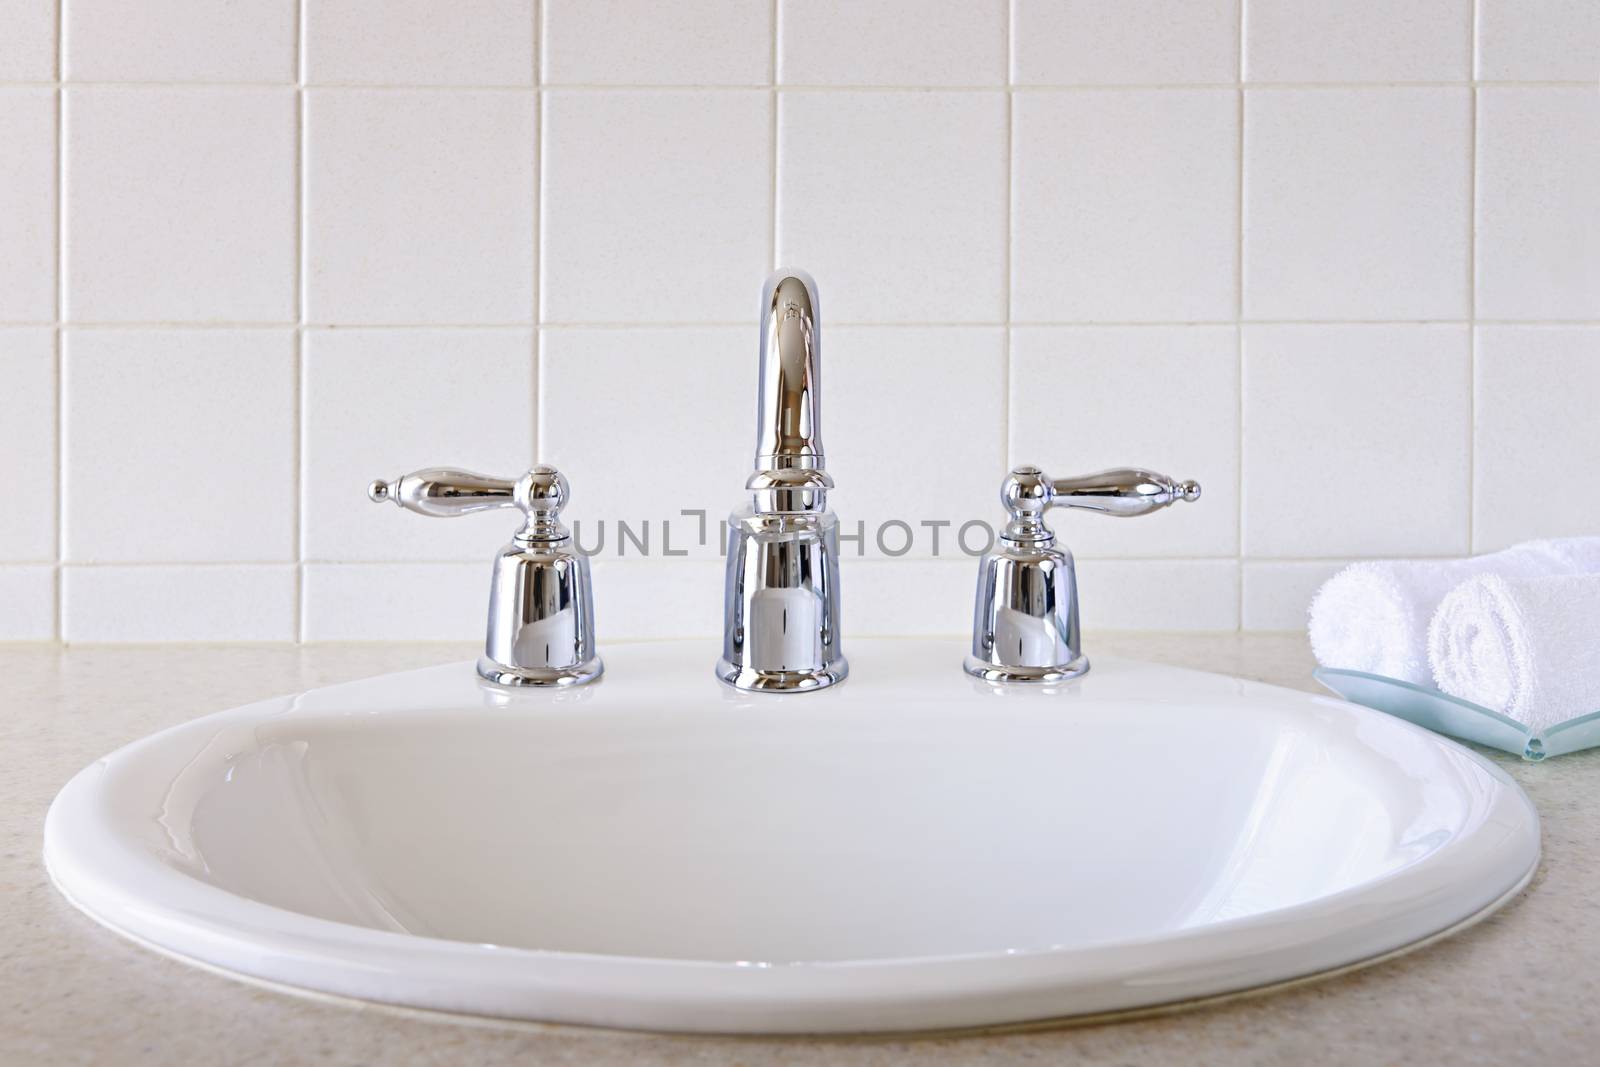 Bathroom sink by elenathewise